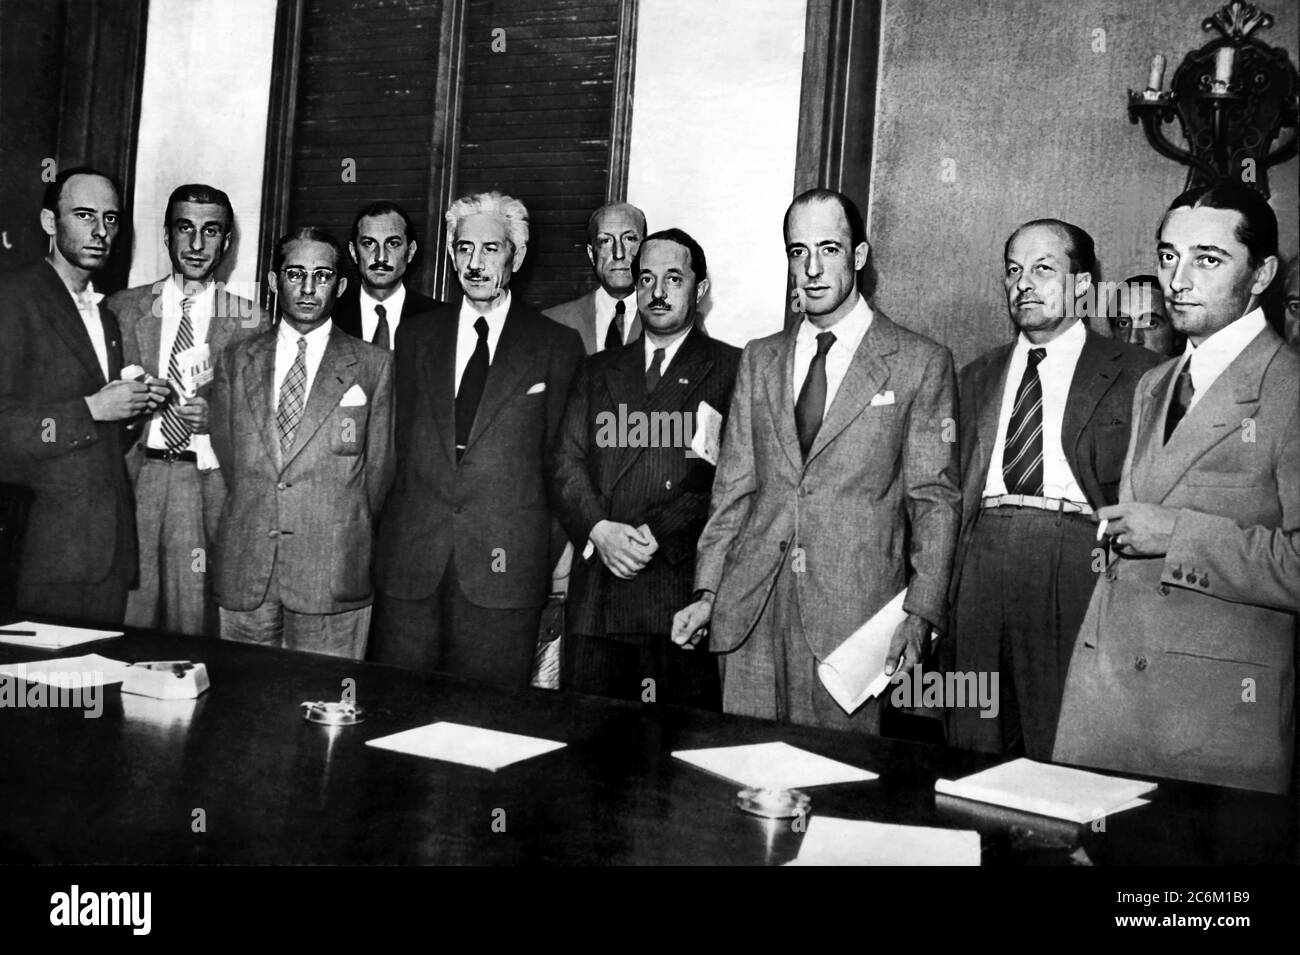 1945 , MILAN , ITALIE : les partisans et les politiciens italiens de la CLN ( COMITATO DI LIBERAZIONE NAZIONALE ) pendant une réunion . De gauche : GIAN CARLO PAJETTA ( 1911 - 1990 ) et MARIO VENANZI ( 1913 - 1995 ) par PCI ( Partito Comunista Italiano ), le 3ème est EMILIO COLOMBO ( 1920 - 1913 ) de DC ( Democrazia Cristiana ), le 5ème FERRUCCIO PARRI ( 1890 - 1981 ), le 7, le GIUSEPPE BRUSASCA ( 1900 - 1994 ) et le 8 RODOLFO MORANDI ( 1903 - 1955 ) de PSI ( Partito Socialista Italiano ) . - ritratto - portrait - POLITICA - POLITHO - ITALIANA - ITALIA - POLITIC - ITALIA - cravatta - RESISTEN Banque D'Images